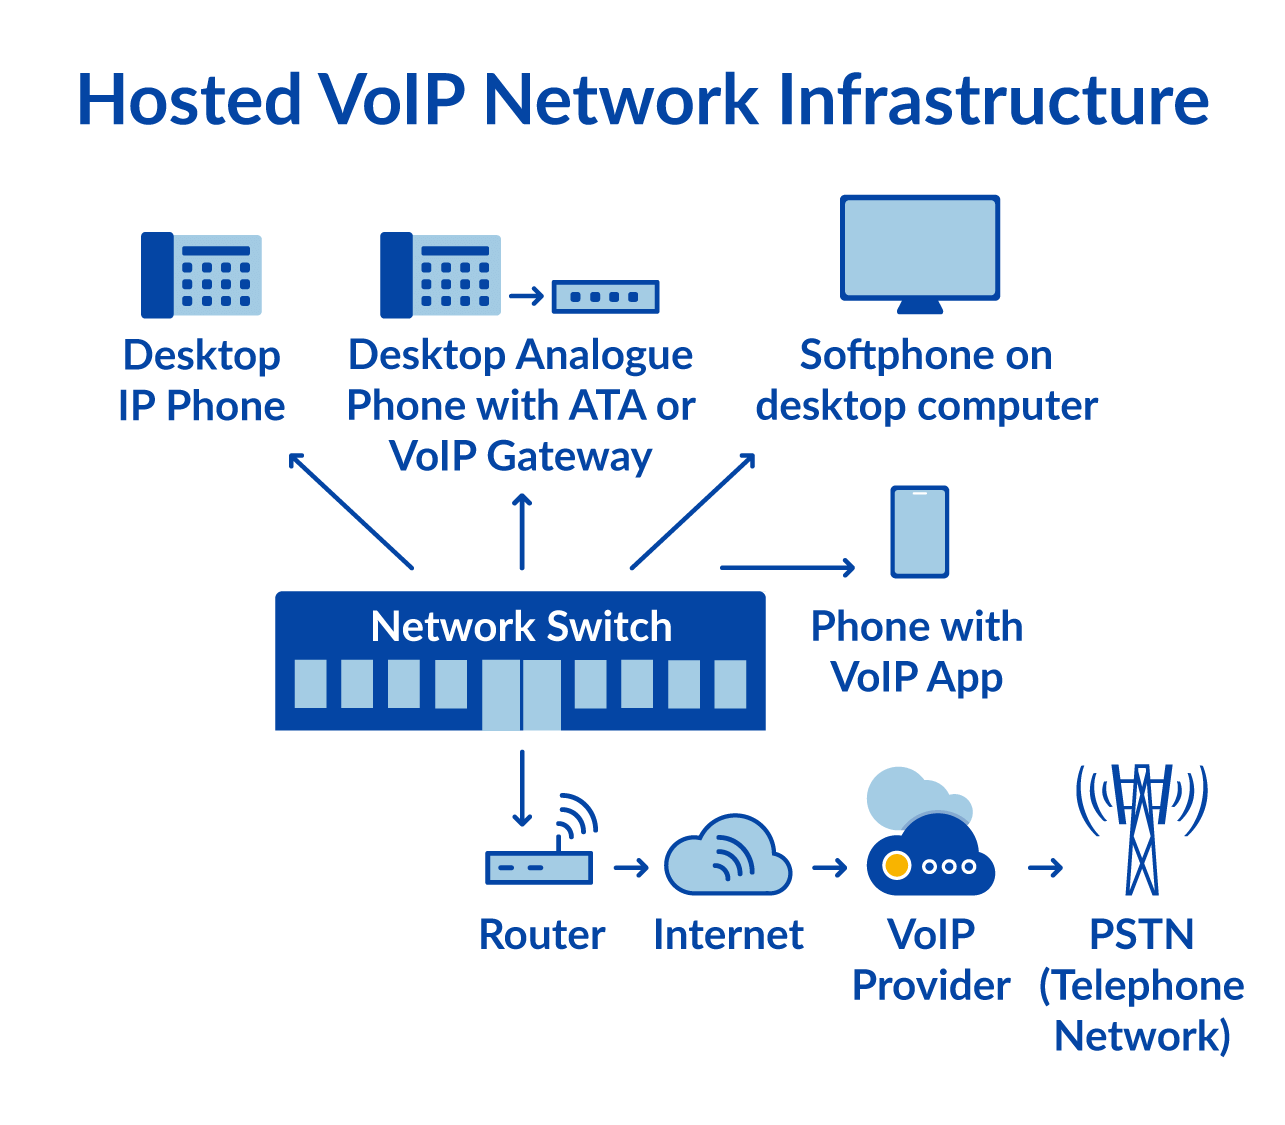 託管 VoIP 基礎設施圖 (2019)